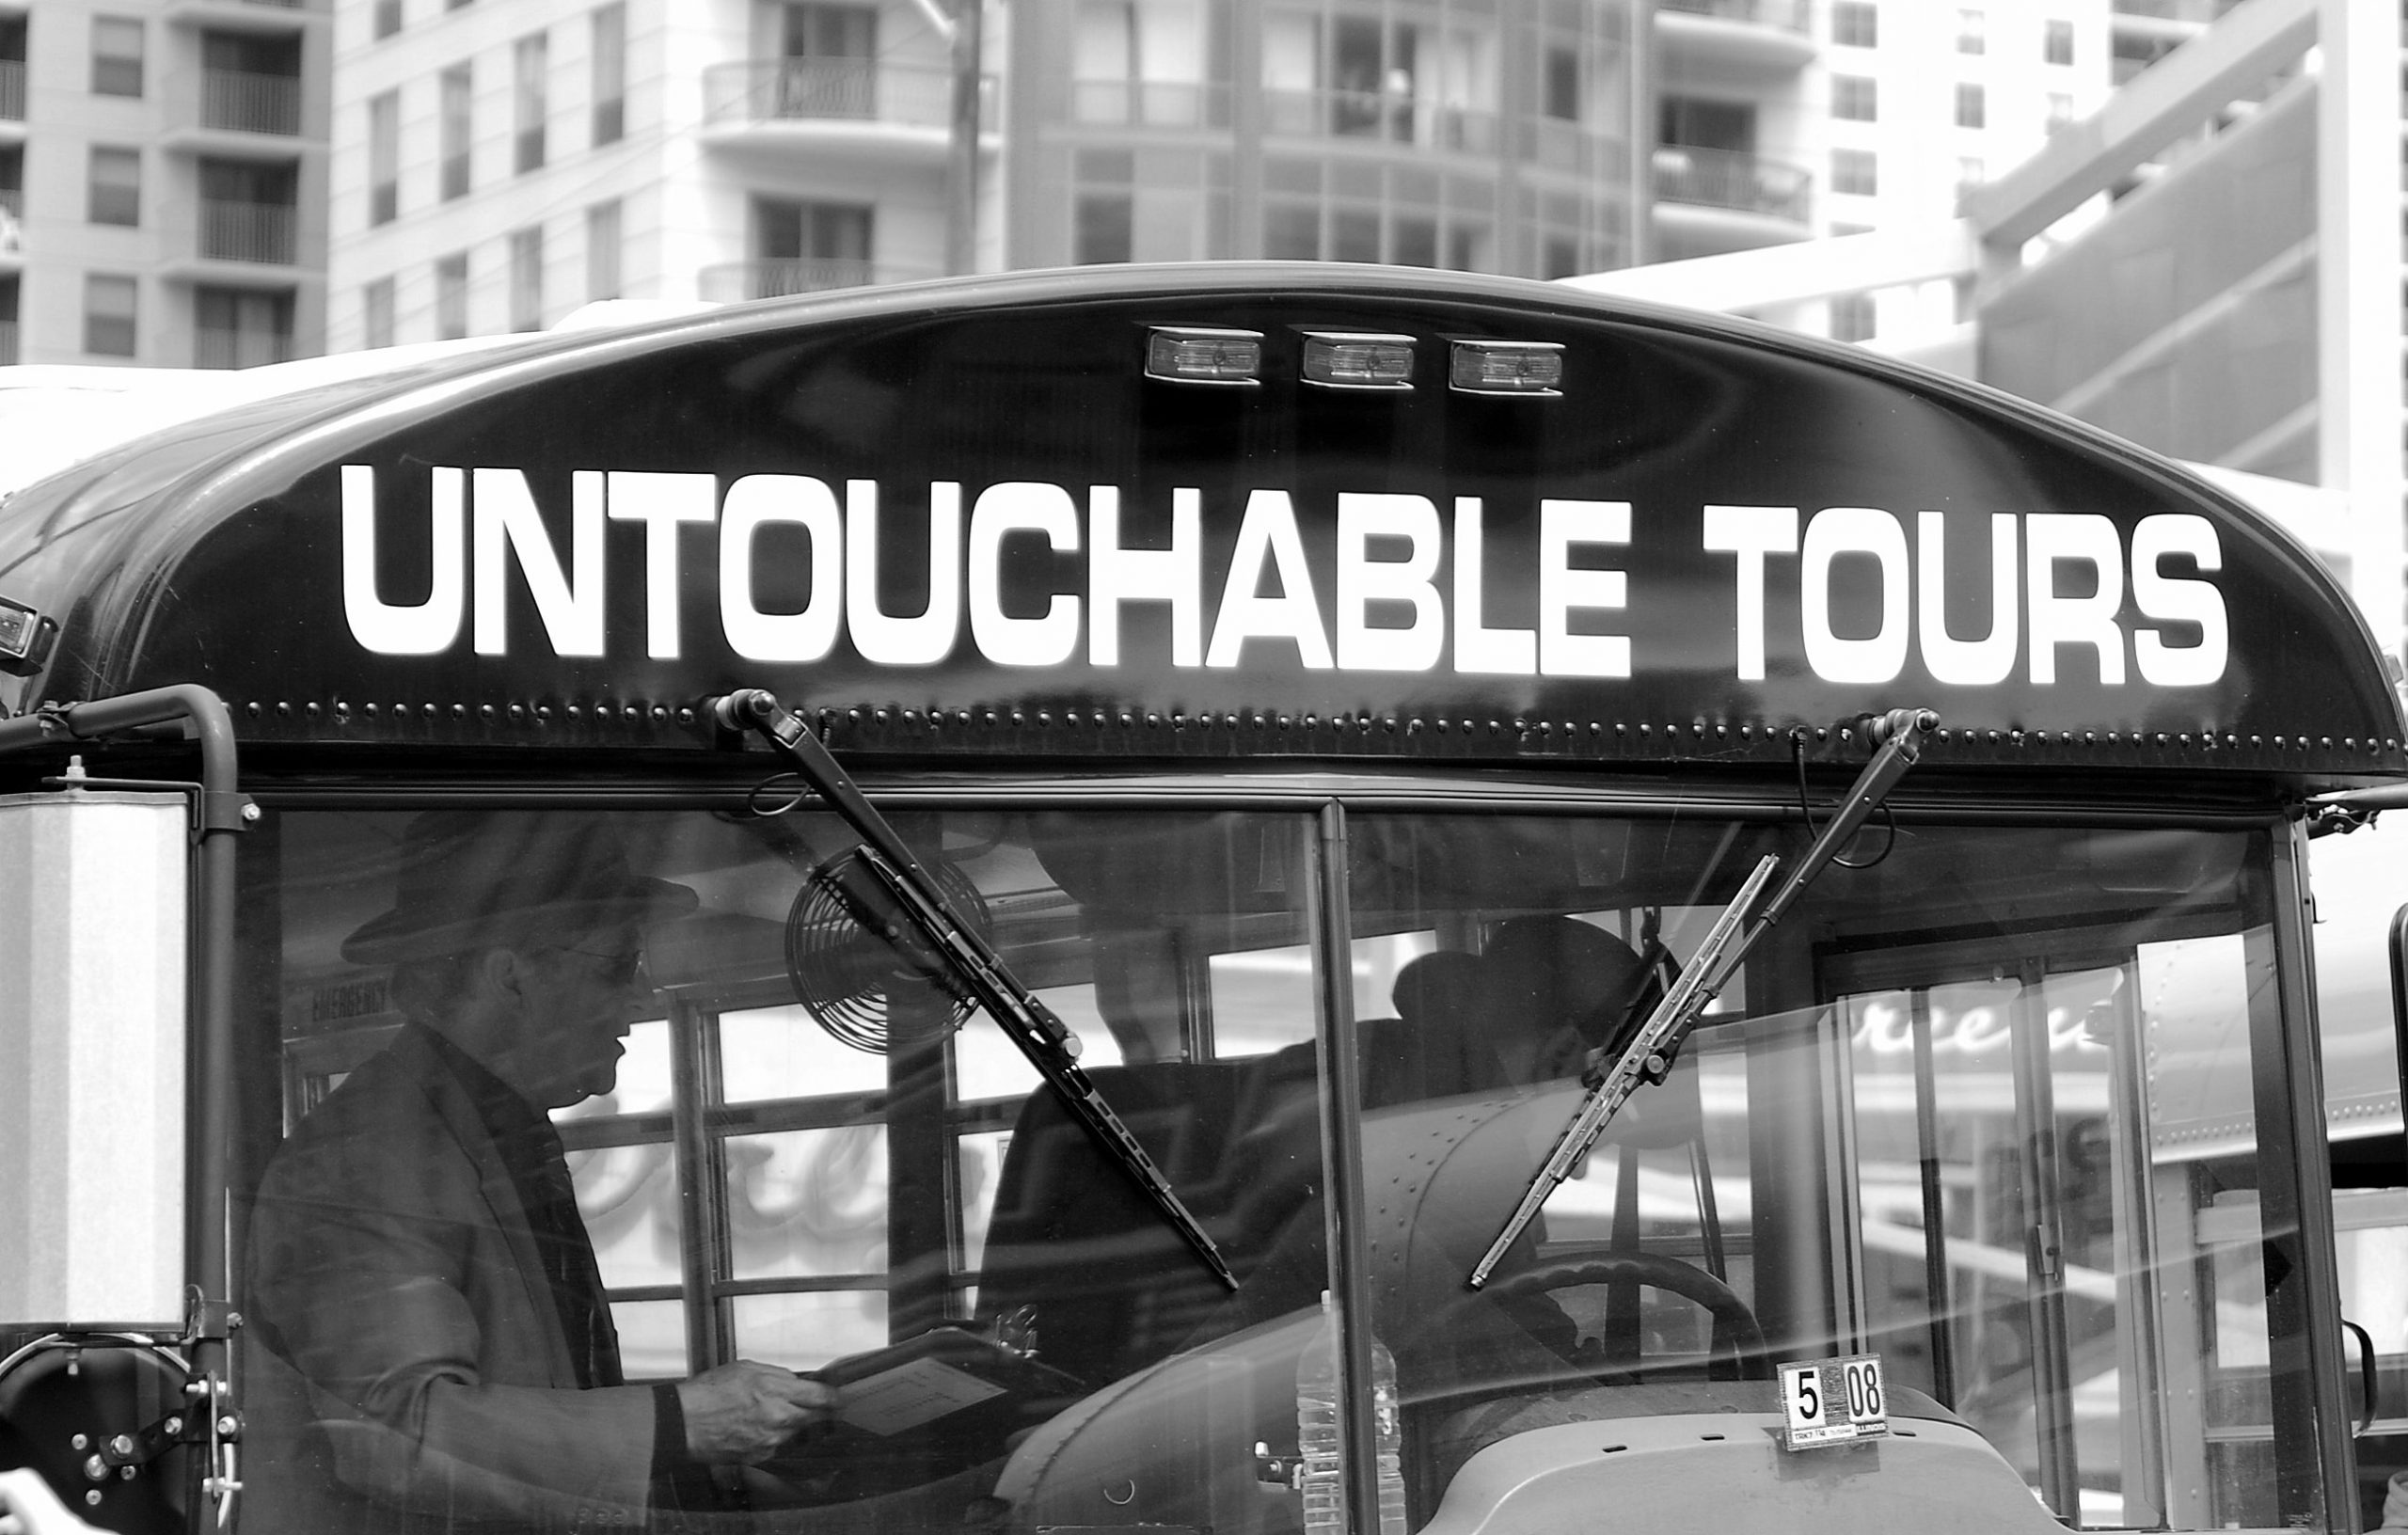 Untouchable Tour gangster tour bus